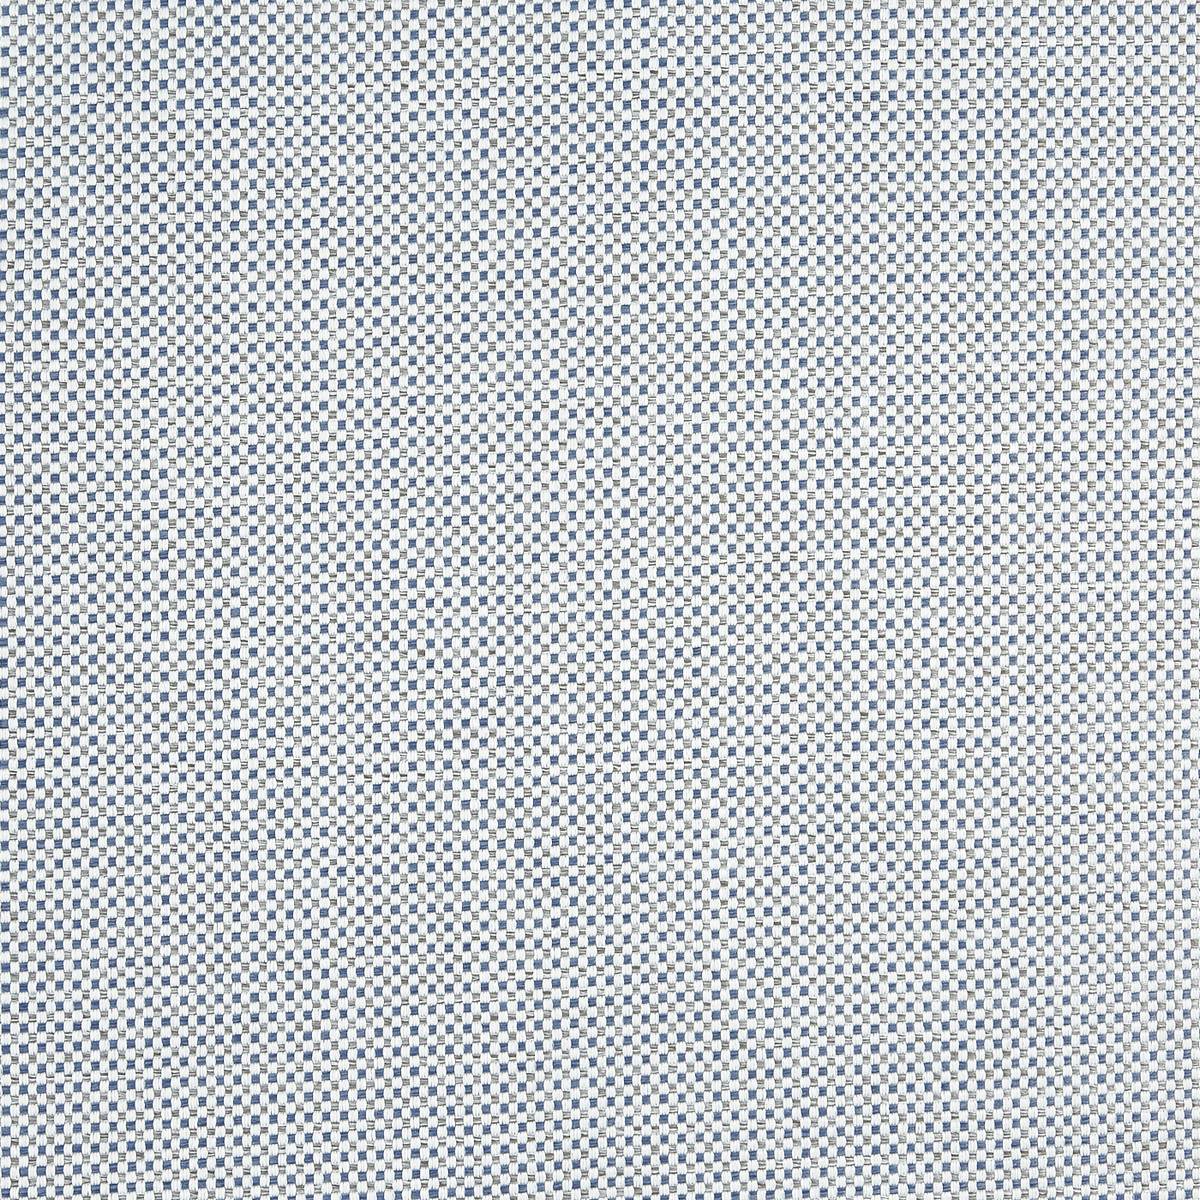 Checkerboard Cambridge Fabric by Prestigious Textiles